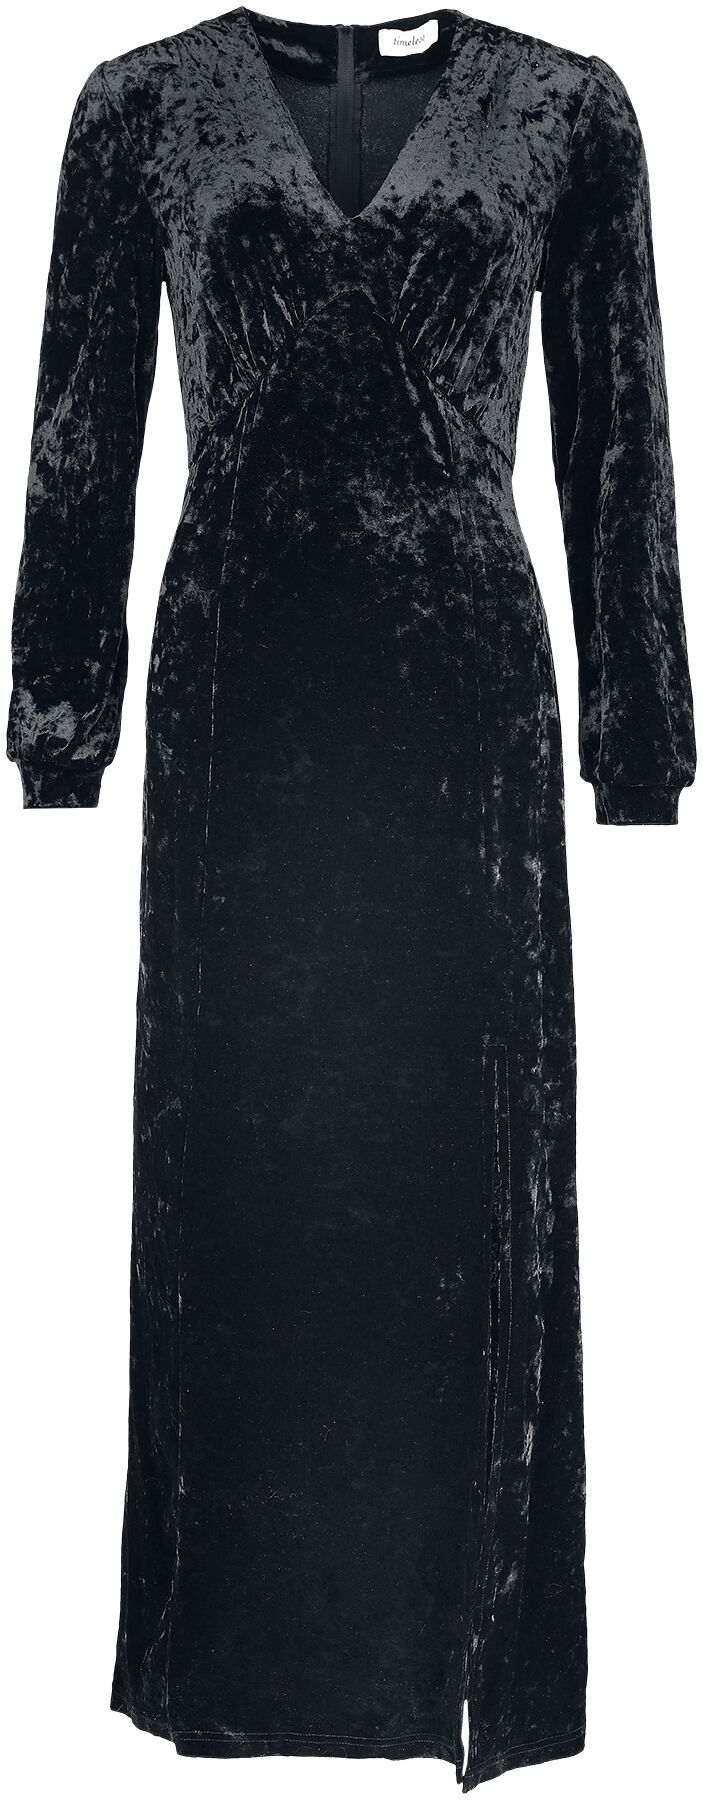 Timeless London - Rockabilly Kleid lang - Miley Black Dress - XS bis L - für Damen - Größe M - schwarz von Timeless London